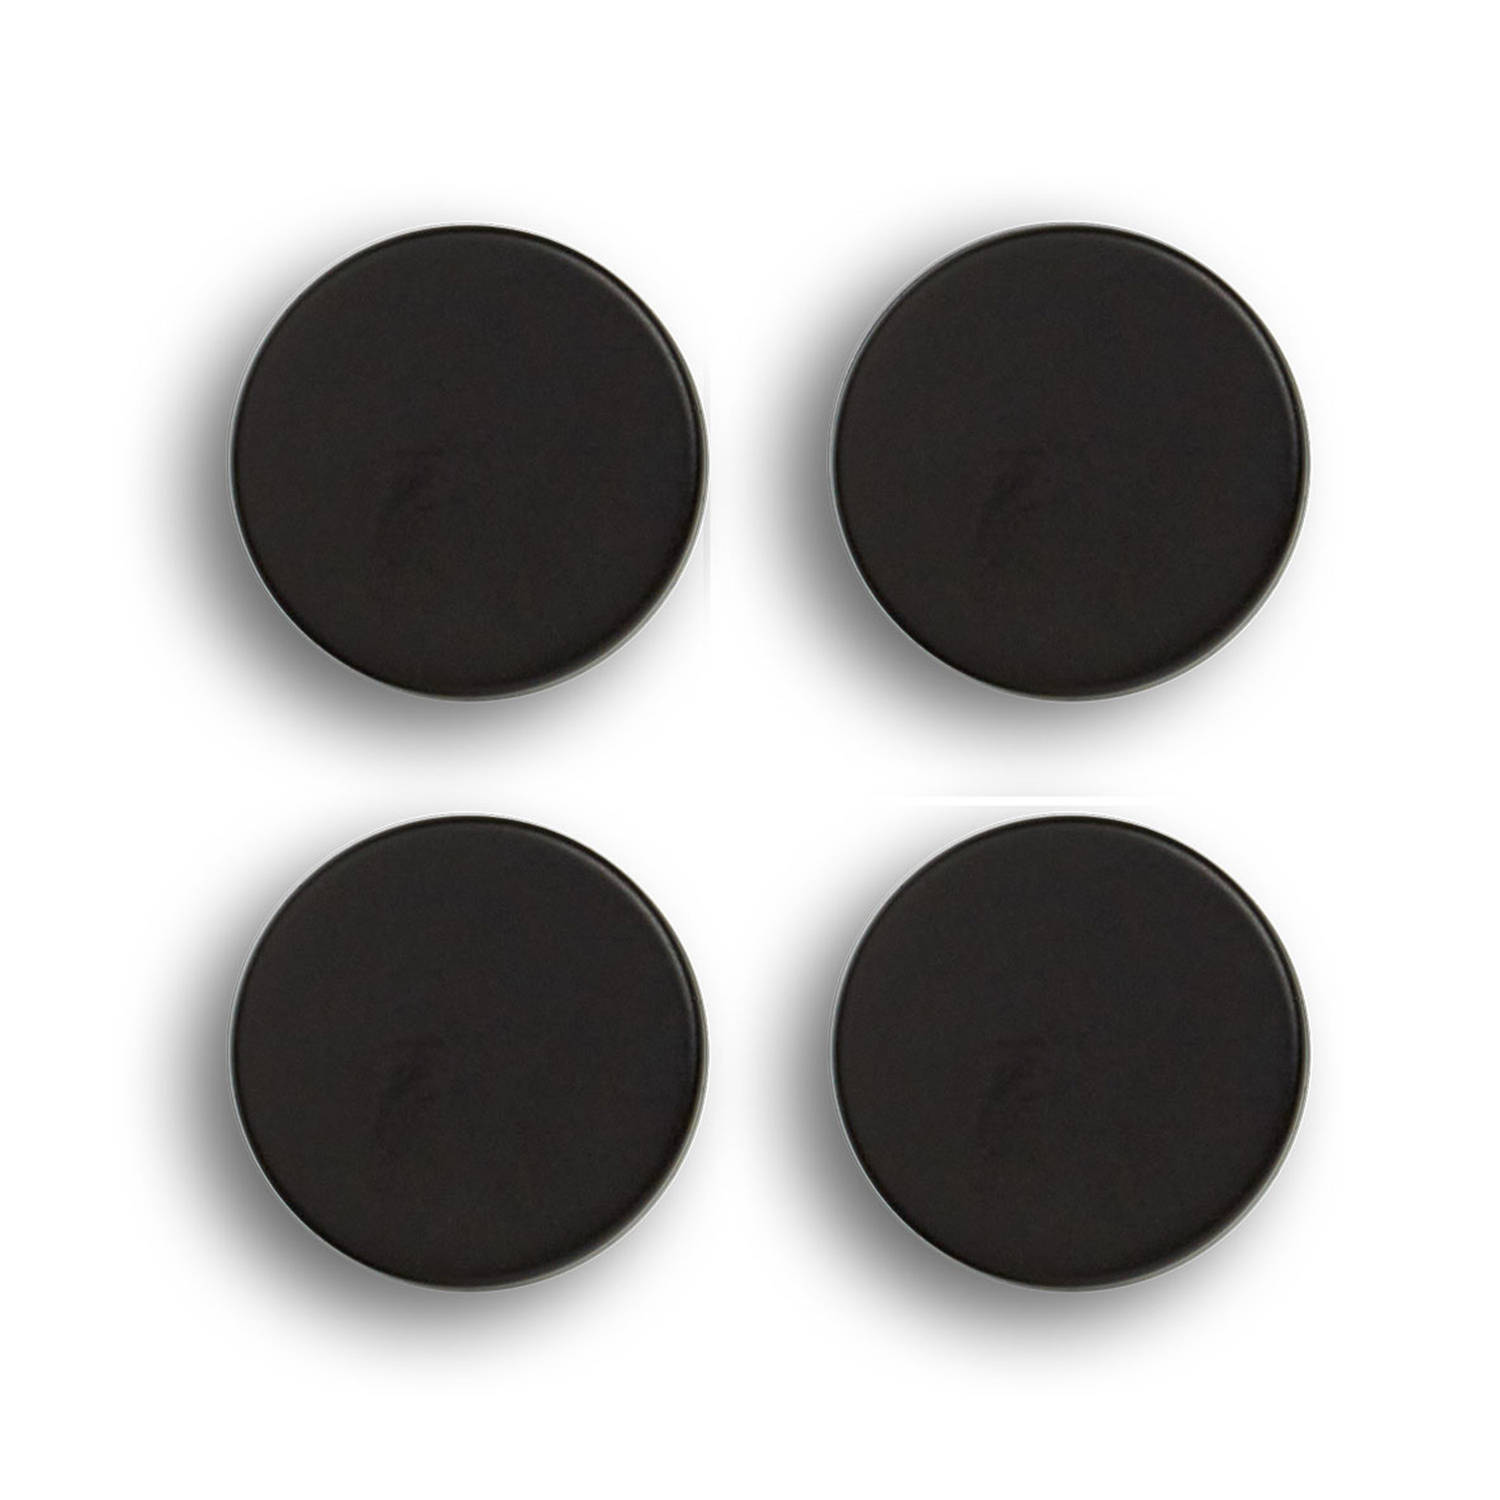 Whiteboard-koelkast magneten extra sterk 4x mat zwart 2 cm Magneten